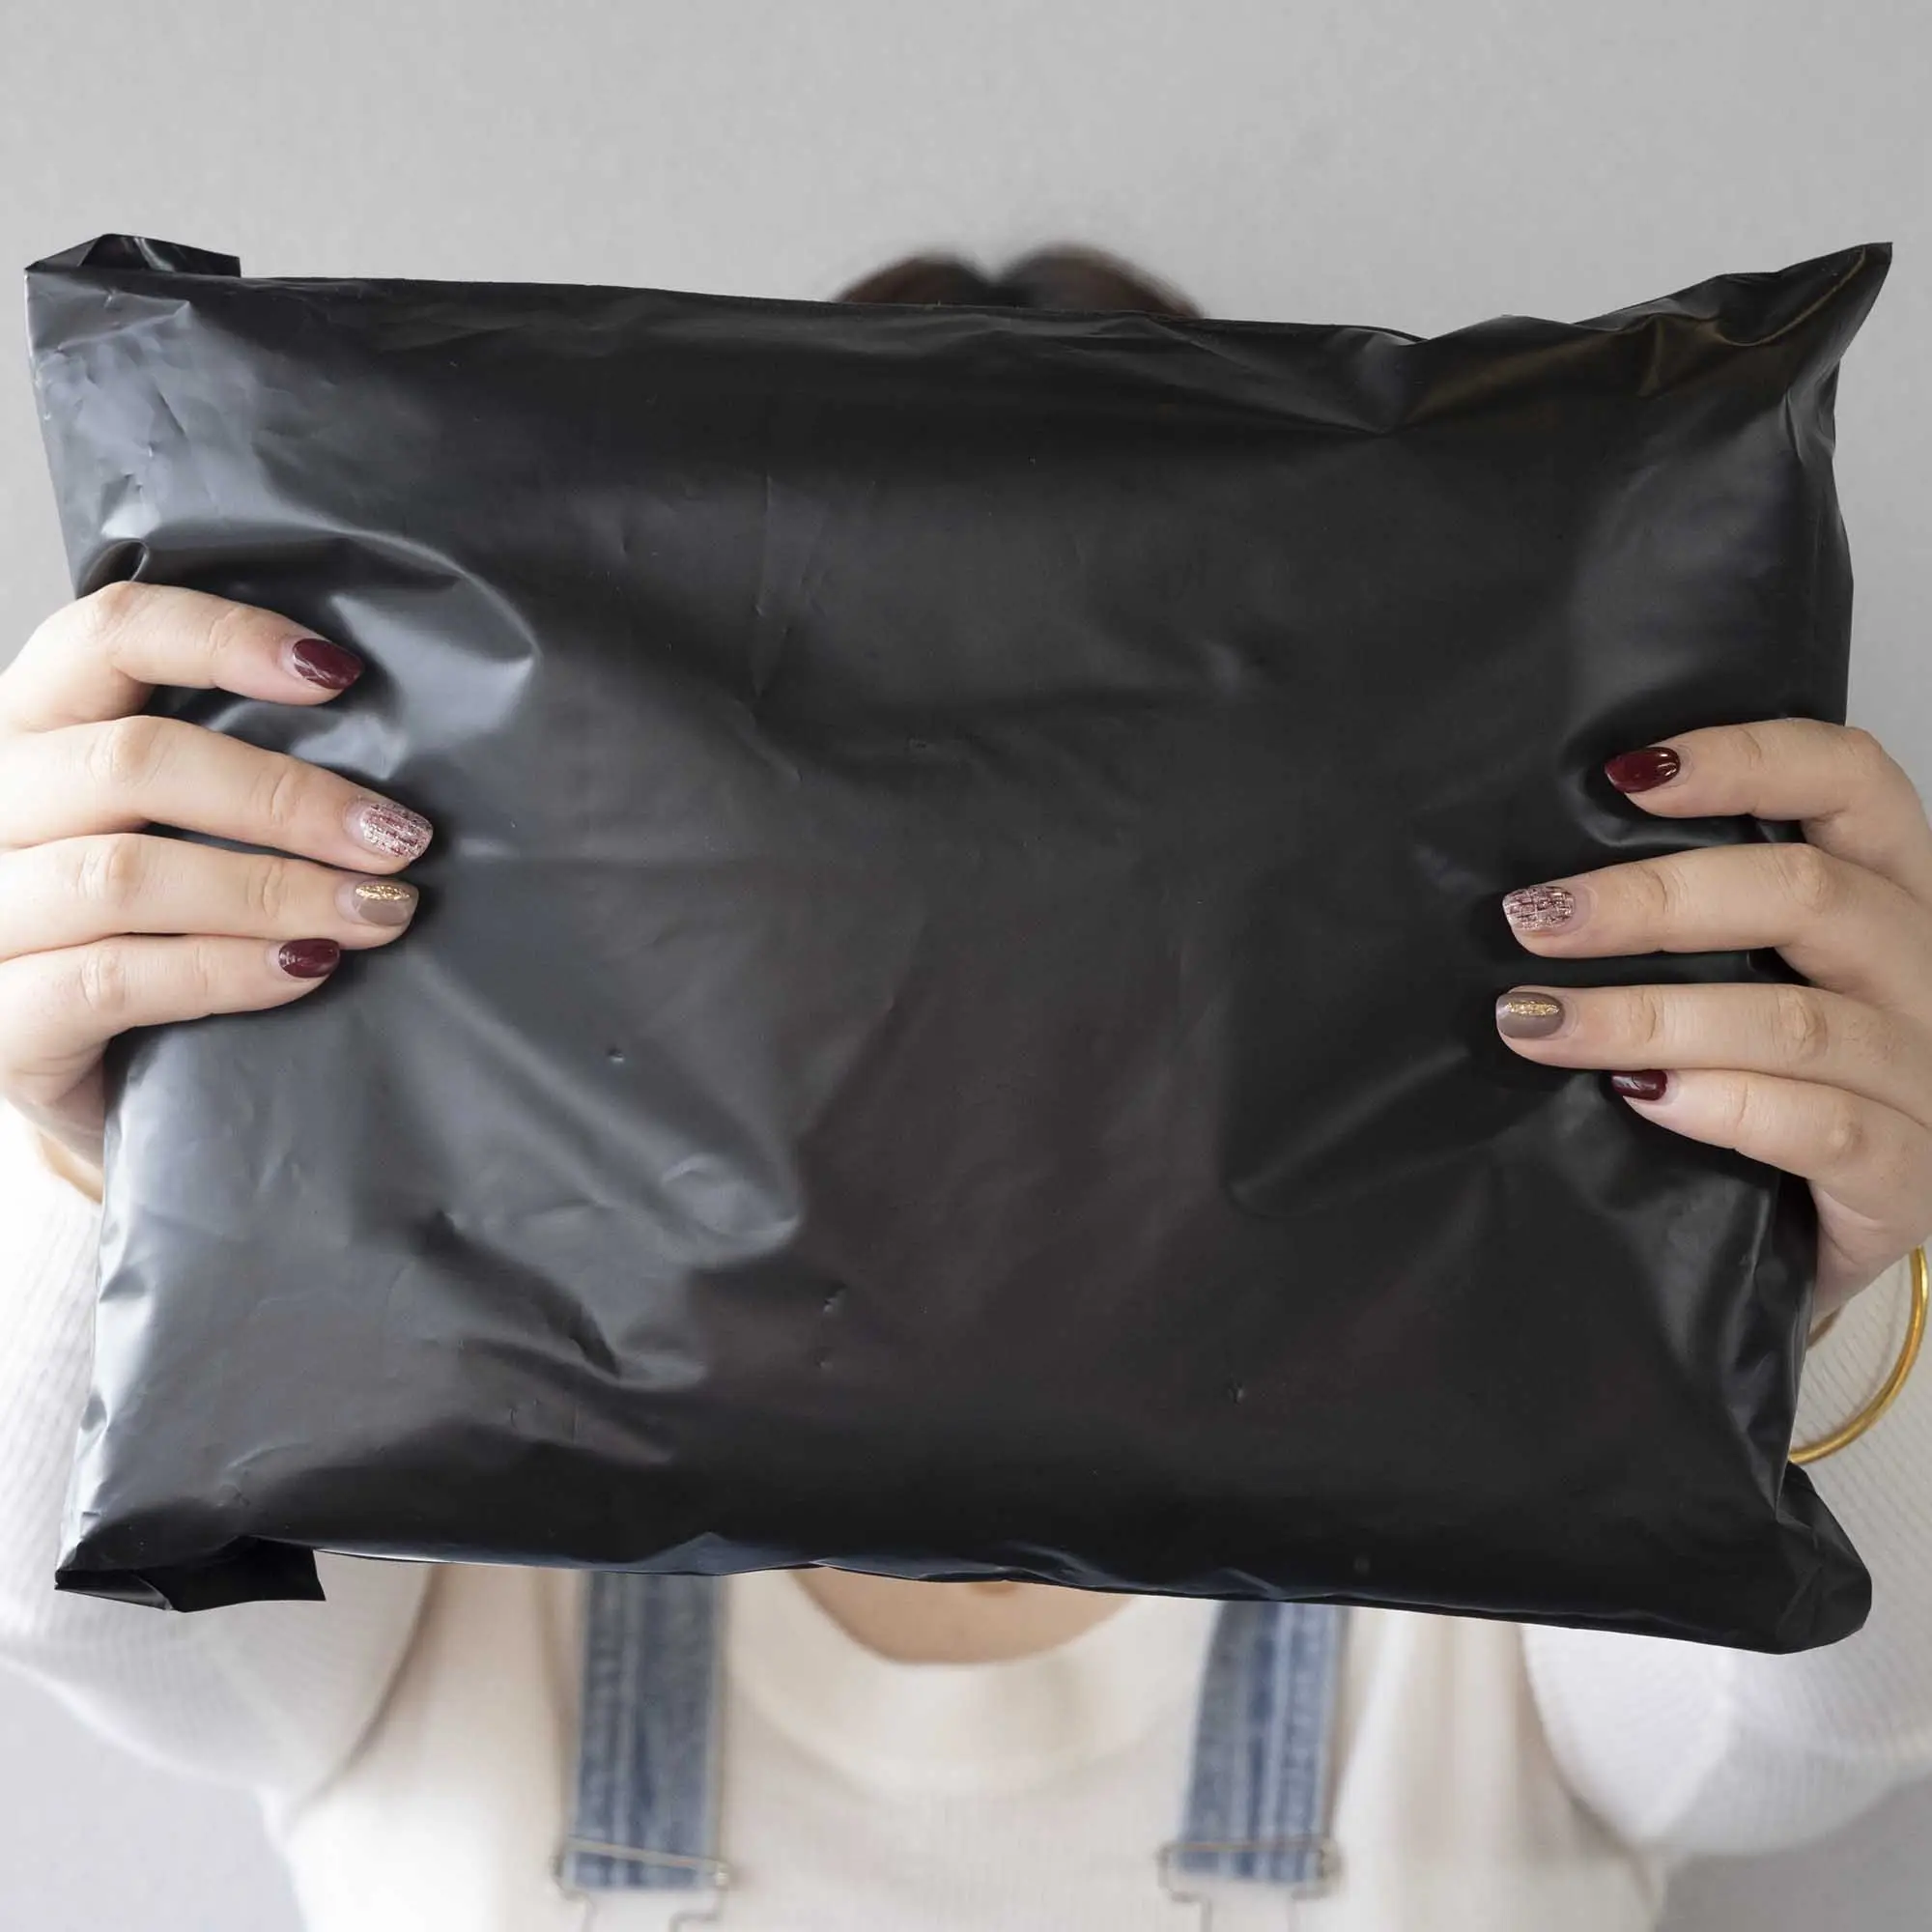 Benutzer definiertes Logo Gedruckte Express-Tasche Recycelte schwarze Kuriert aschen Kleidung Versand paket Umschlag Poly Mailer Mailing Poly mailer Tasche